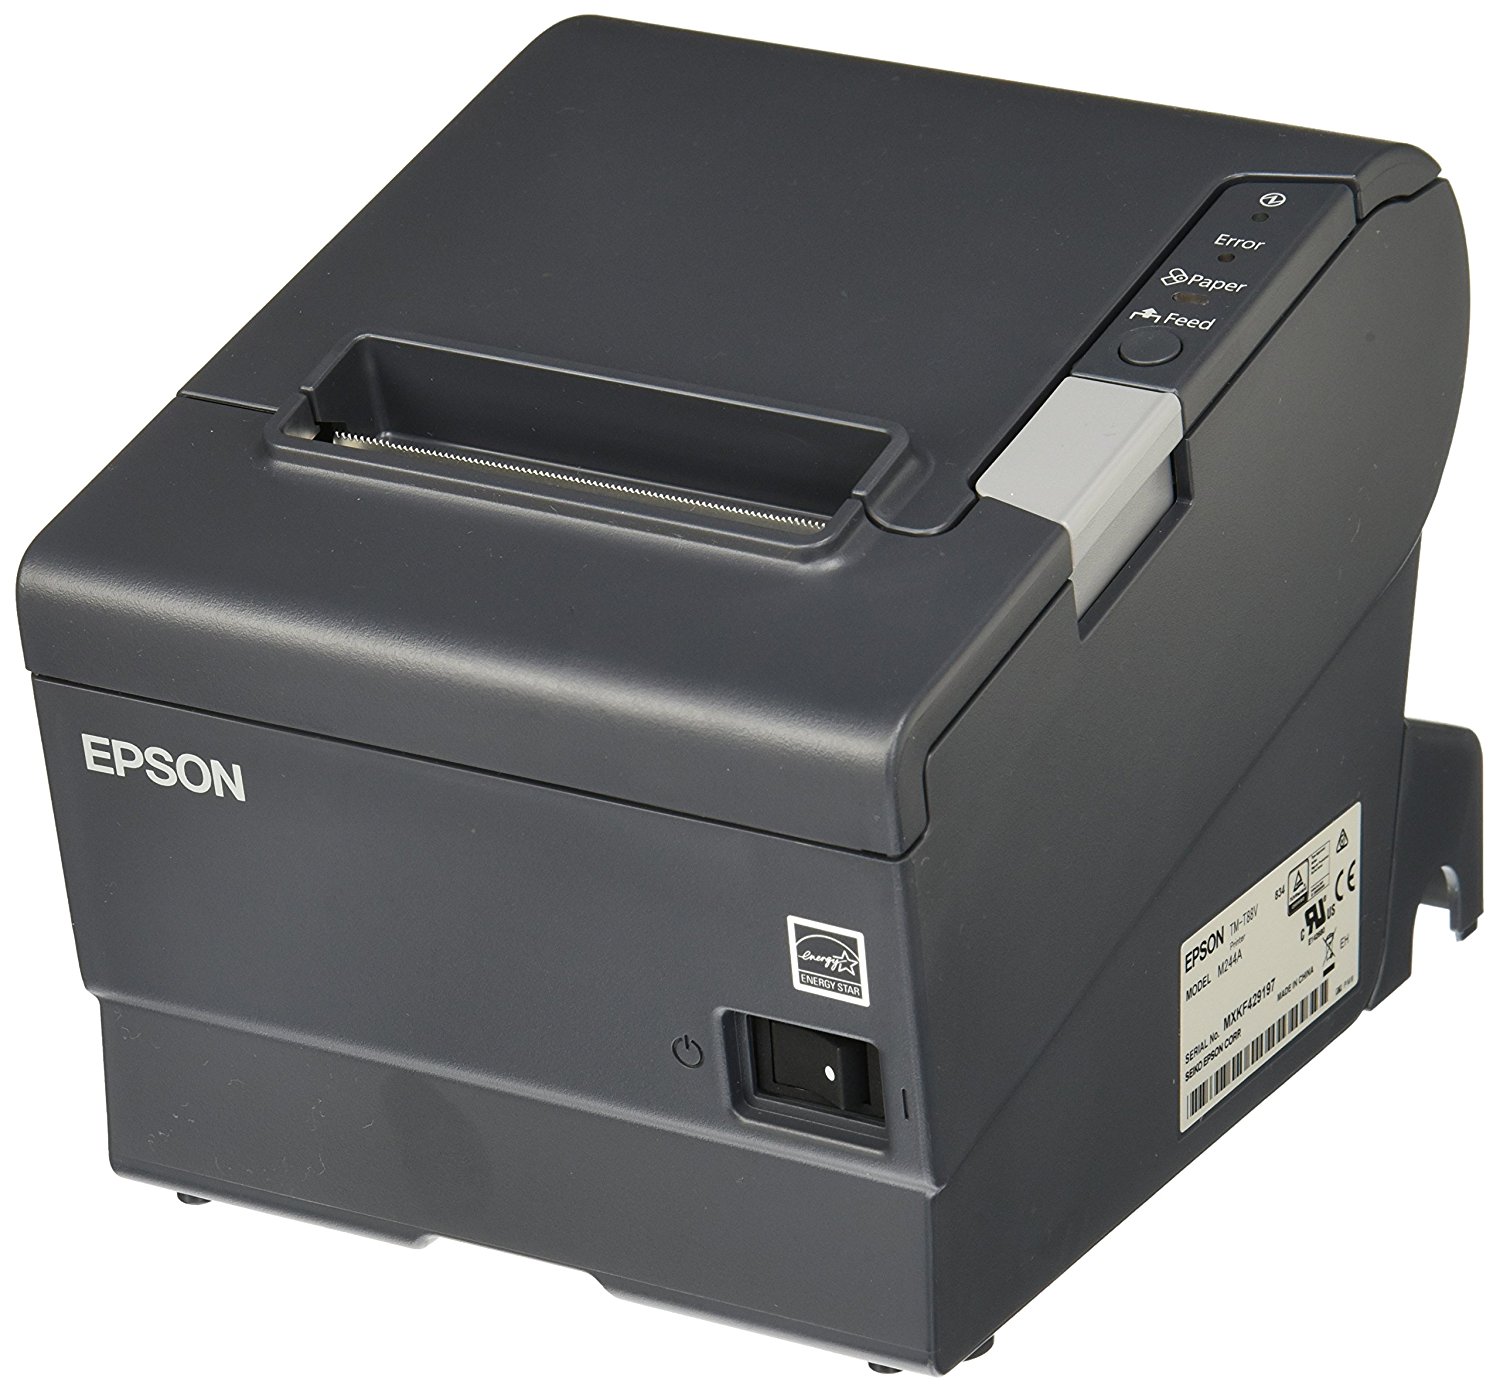 Miniprinter Epson TMT88V